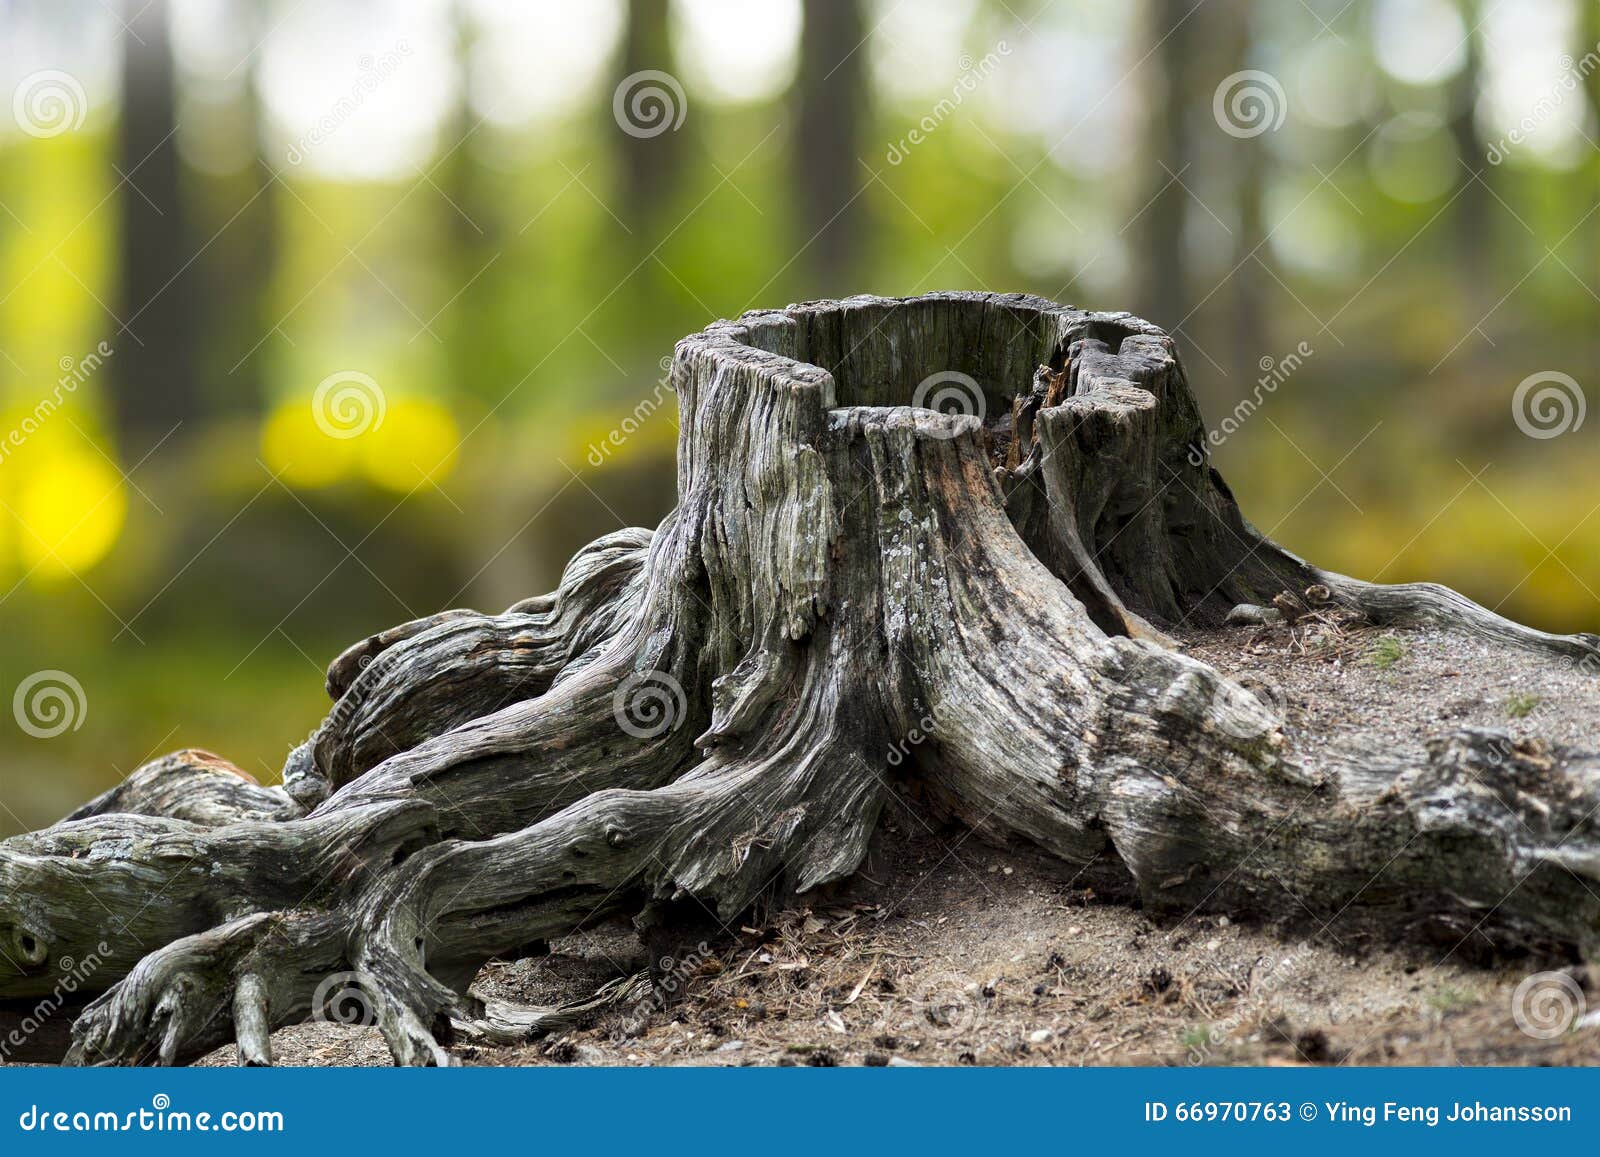 old weathered tree stump